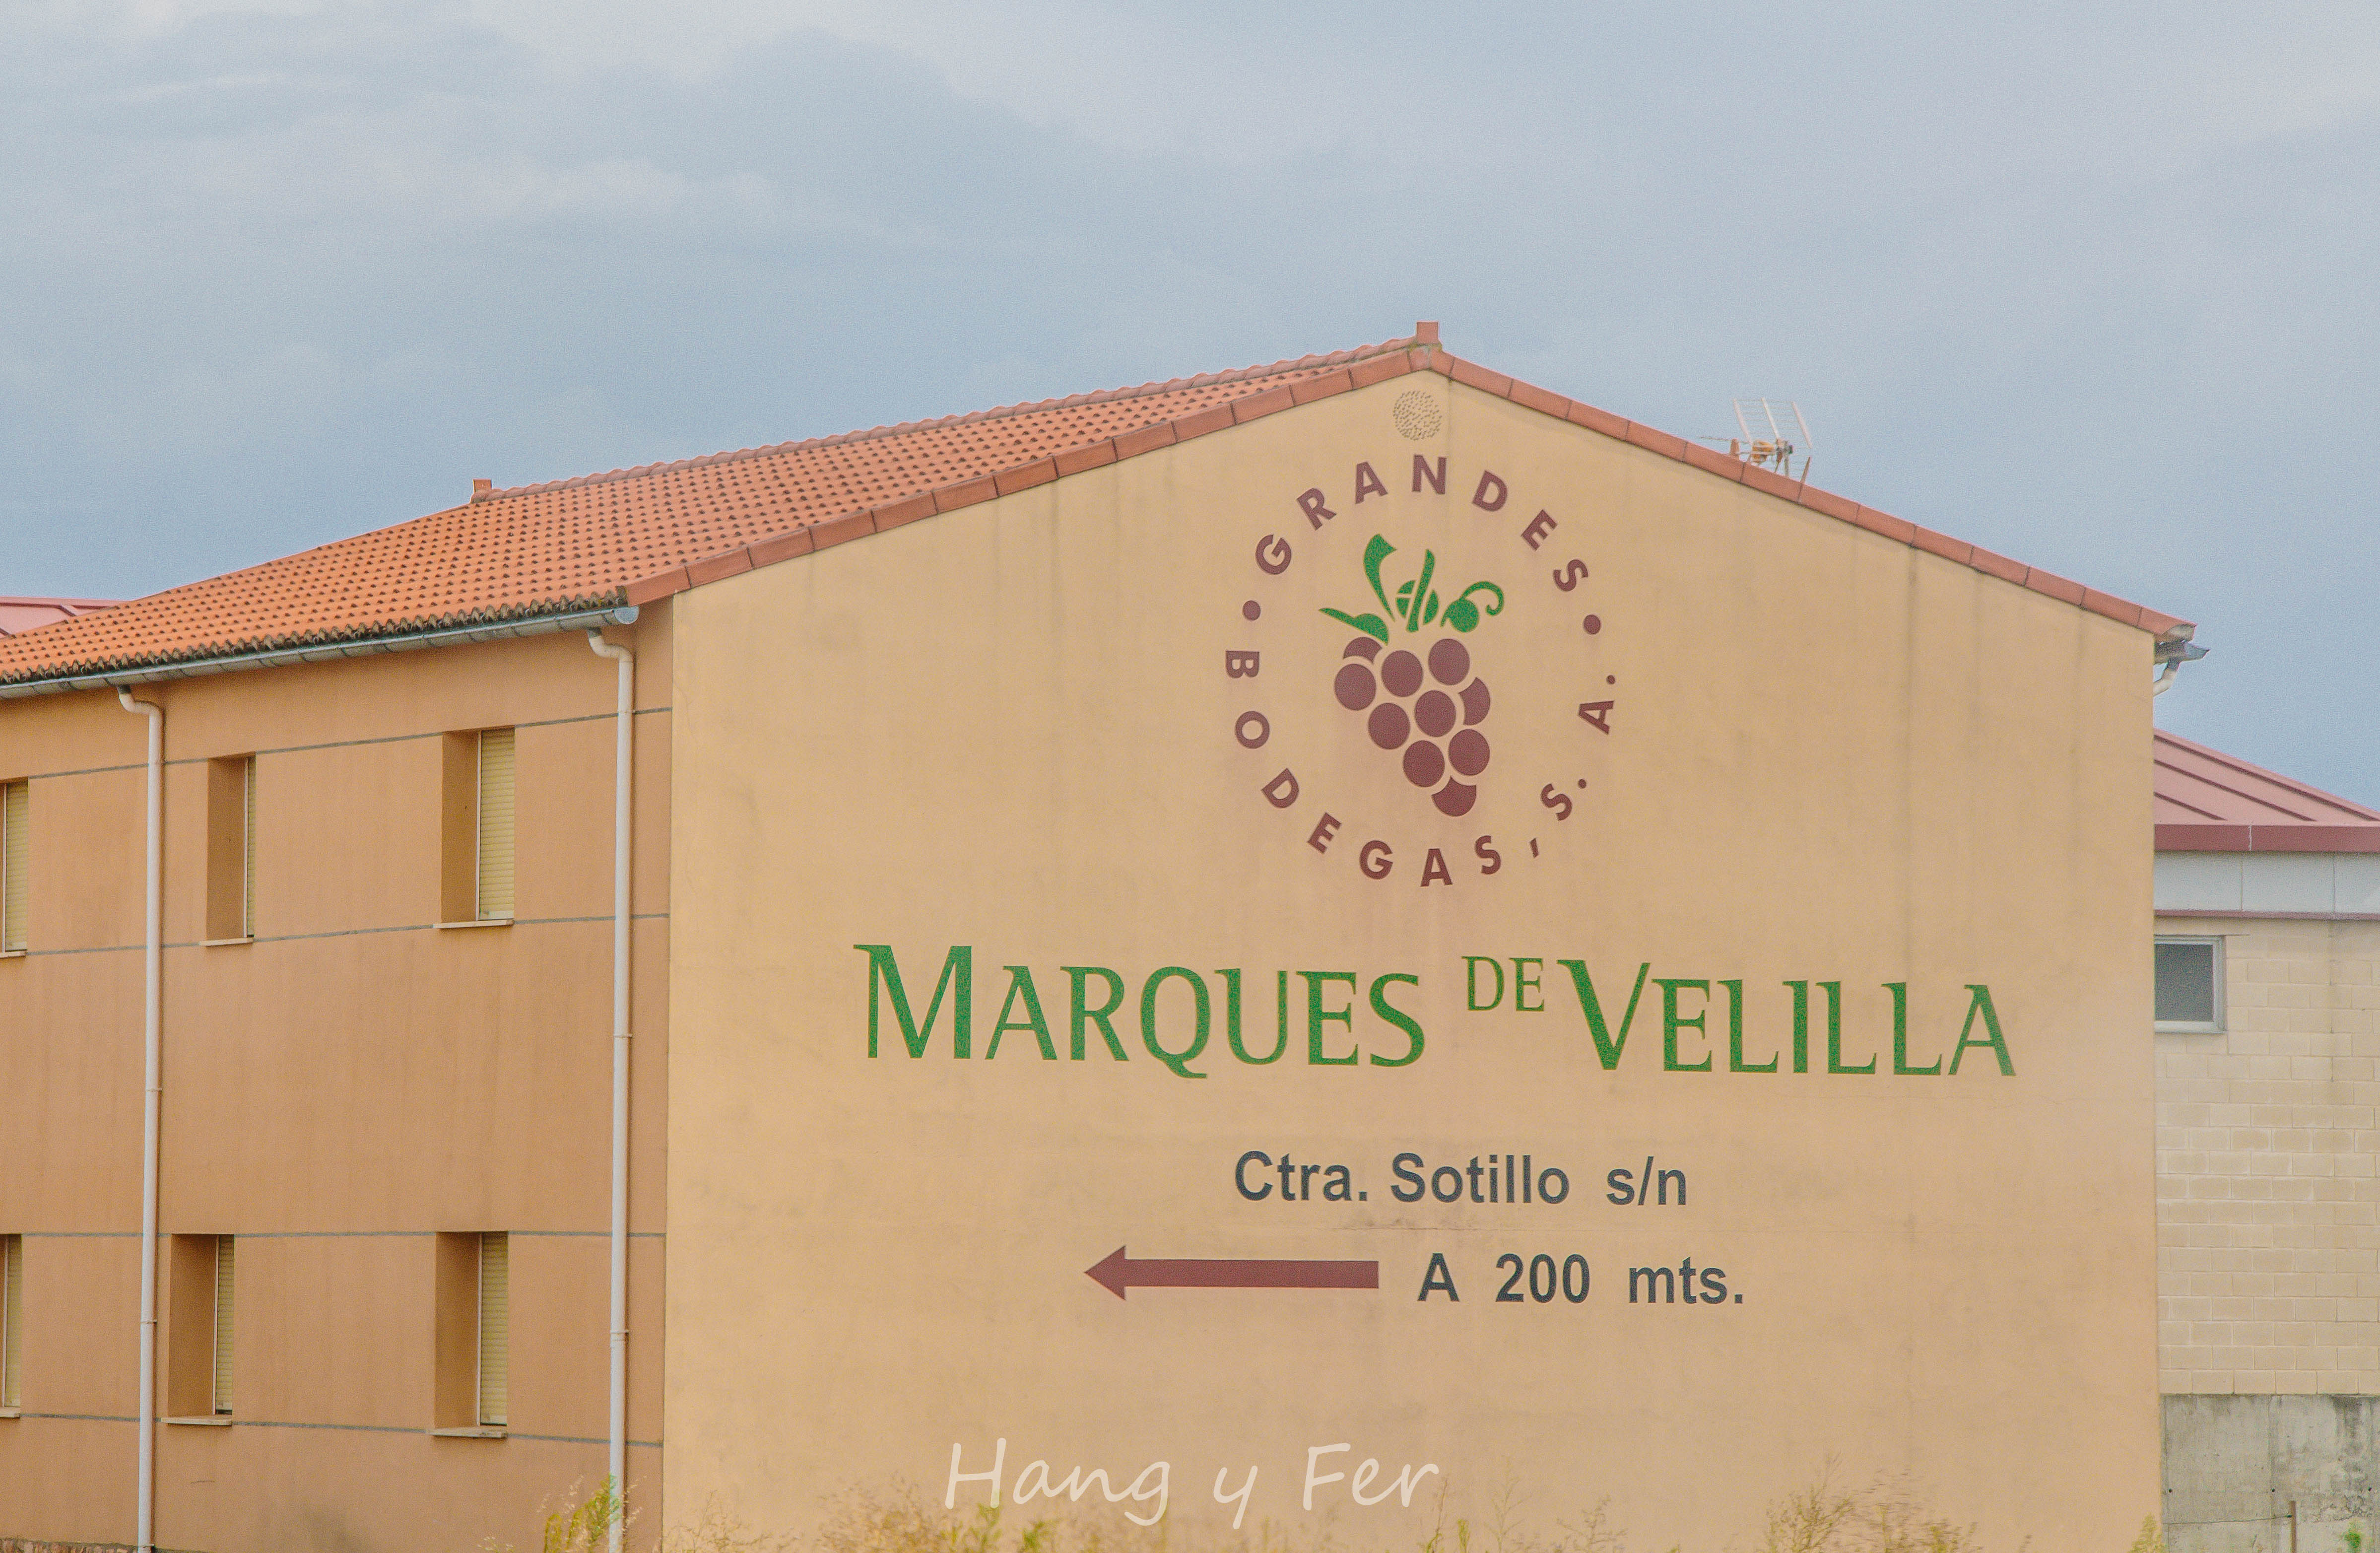 午饭后到达Duero河畔。这是世界上产葡萄酒最好的两个地方之一，除了Aranda de Duero，